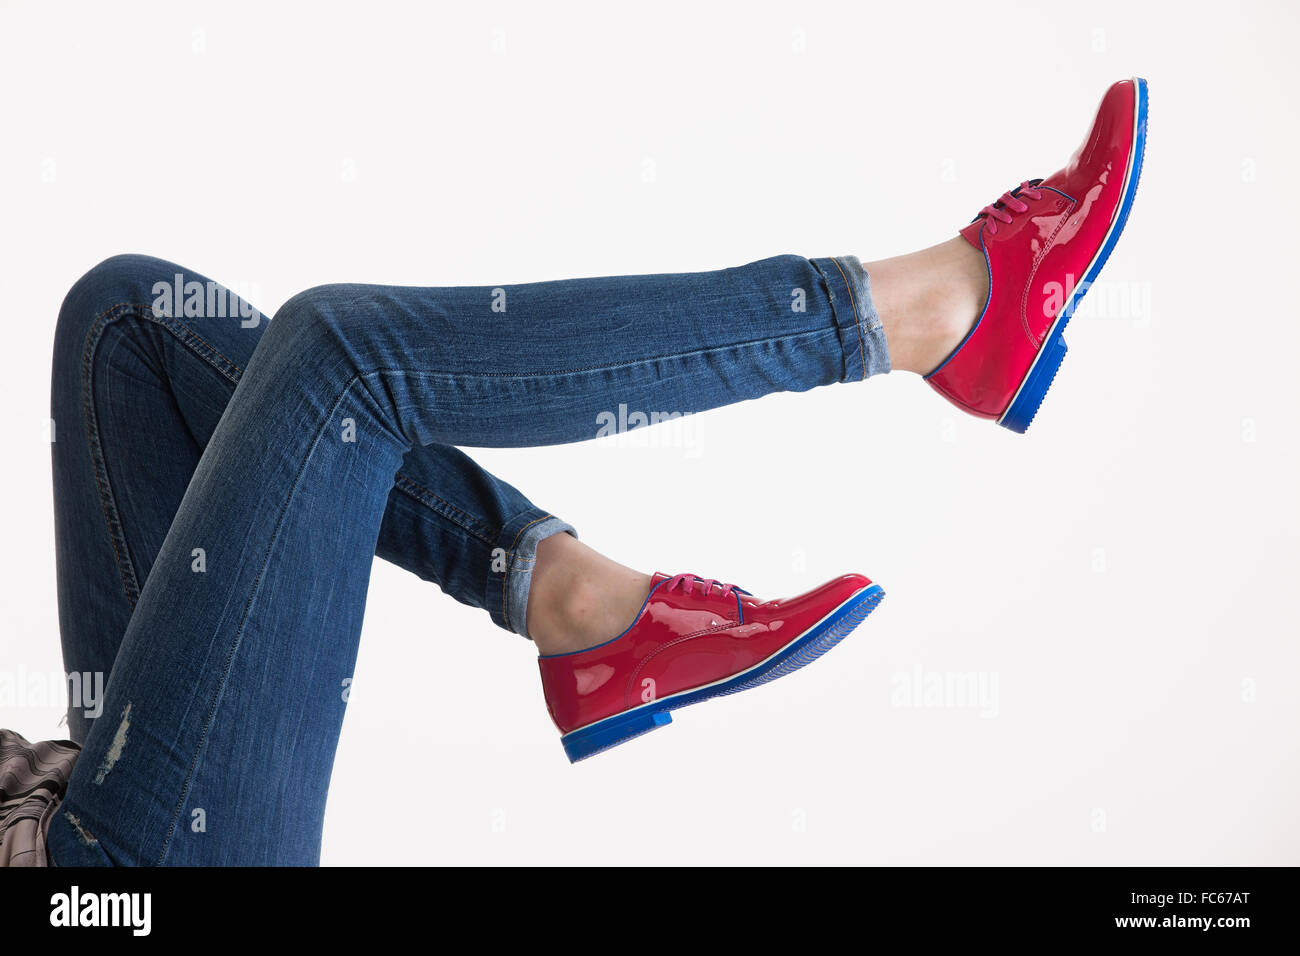 Zapatillas Rojas. Las Piernas De La Mujer En Zapatillas De Deporte Rojas Y  Pantalones Vaqueros Azules En El Fondo Del Piso Ideal Para Cualquier Uso.  Fotos, retratos, imágenes y fotografía de archivo